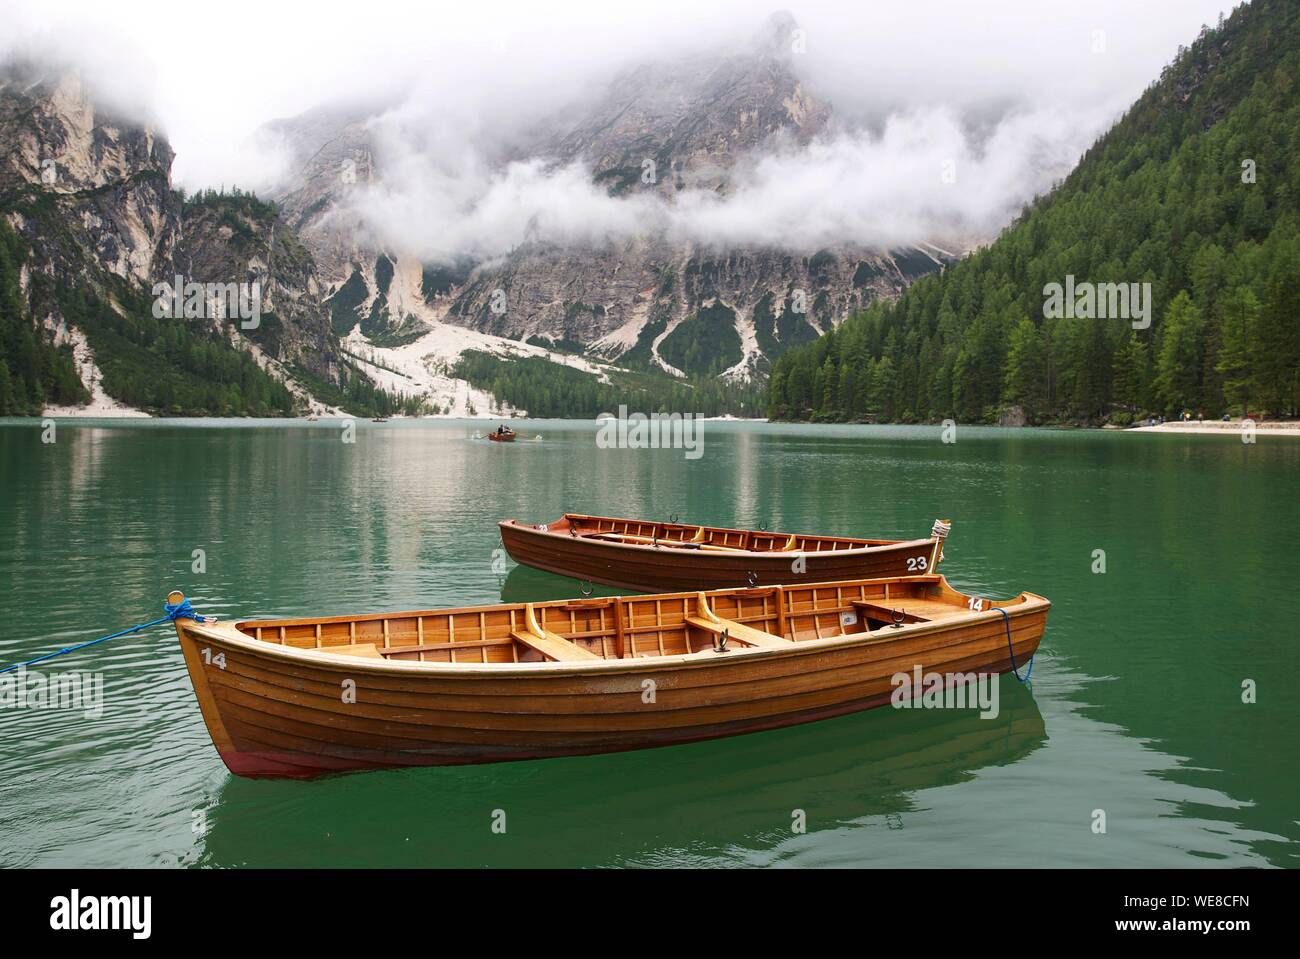 L'Italia, provincia autonoma di Bolzano, Alta Pusteria, il lago di Braies, barche sulle acque color smeraldo del lago circondato da montagne verdi catturati nella nebbia Foto Stock